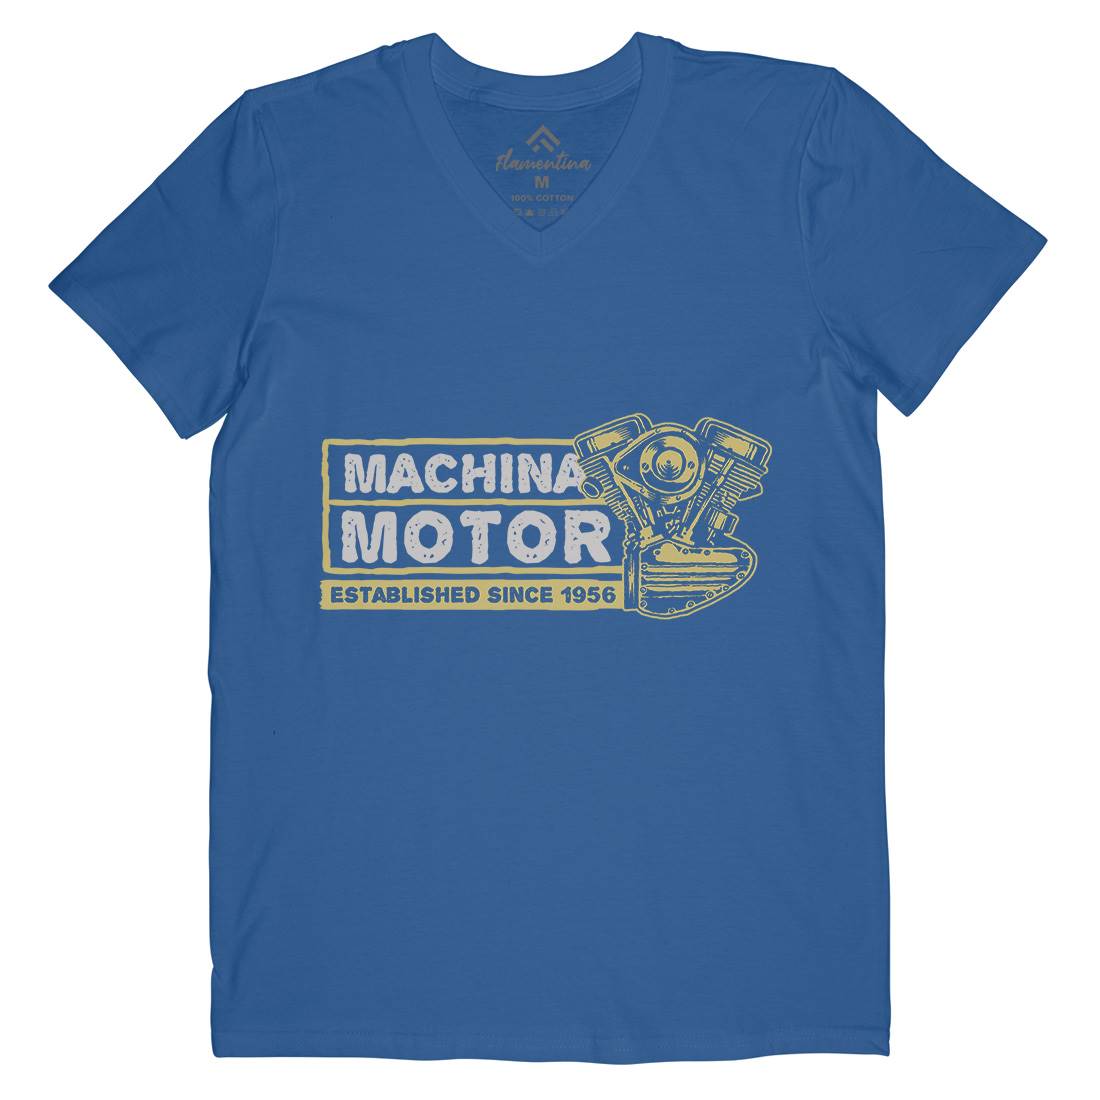 Machina Motor Mens V-Neck T-Shirt Motorcycles A340